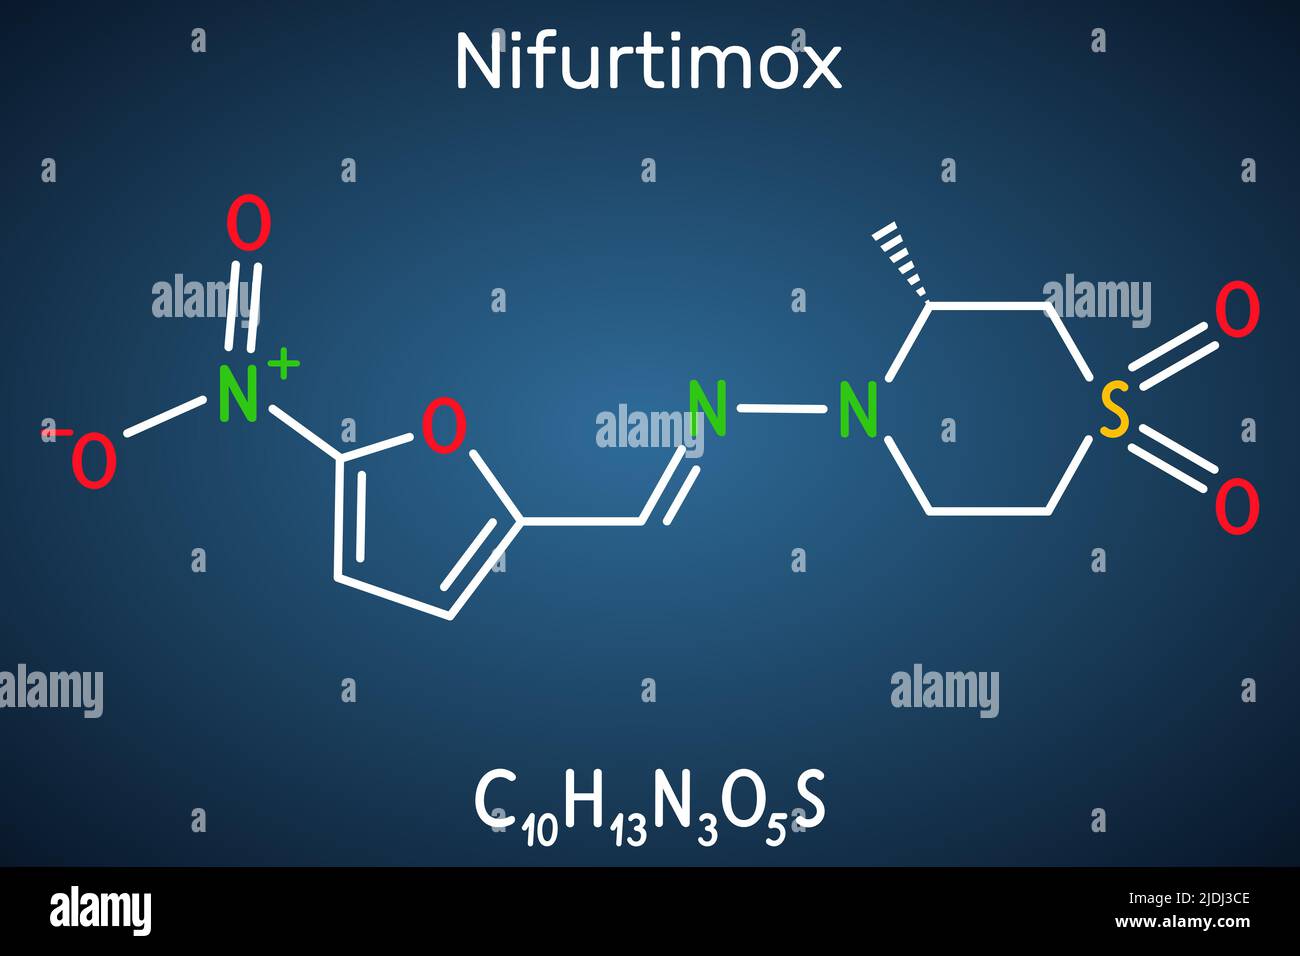 Molécula de nifurtimox. Es un medicamento antiparasitario utilizado para el tratamiento de la enfermedad de Chagas (infección por Trypanosoma cruzi). Fórmula química estructural en t Ilustración del Vector